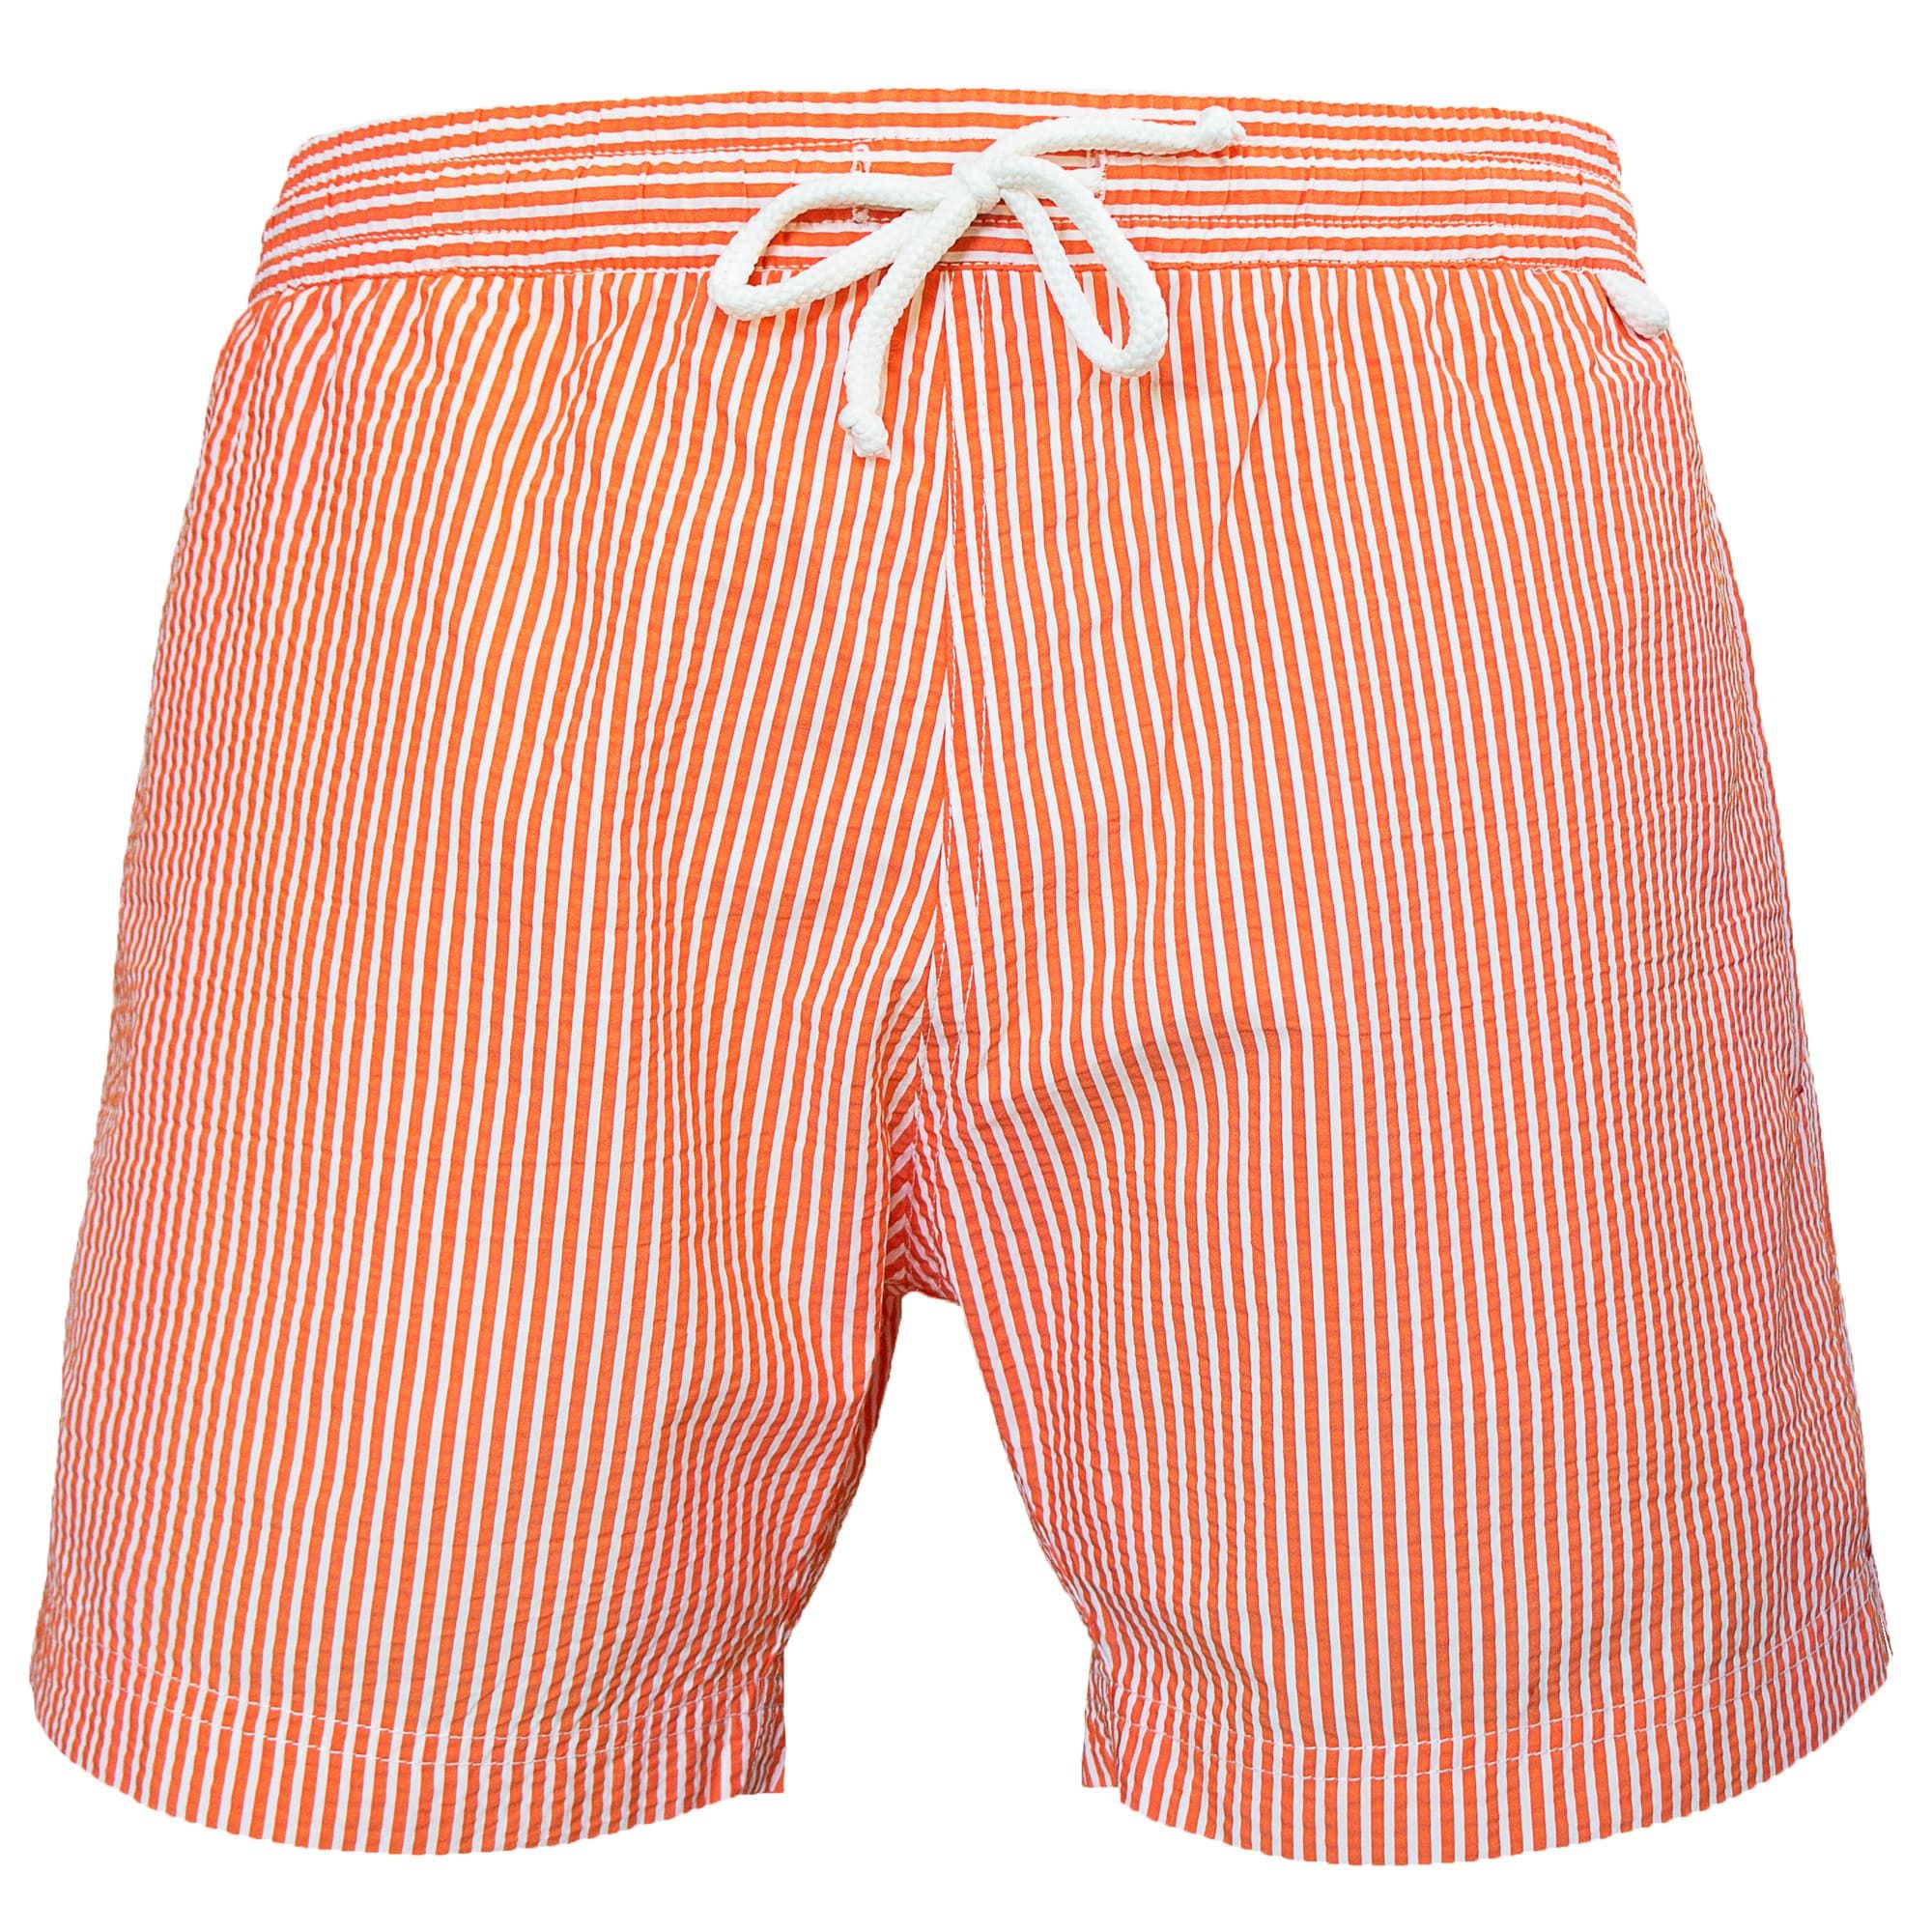 Montauk - Classique stripes | Mens swimming board short swimwear blue, red,  orange and white